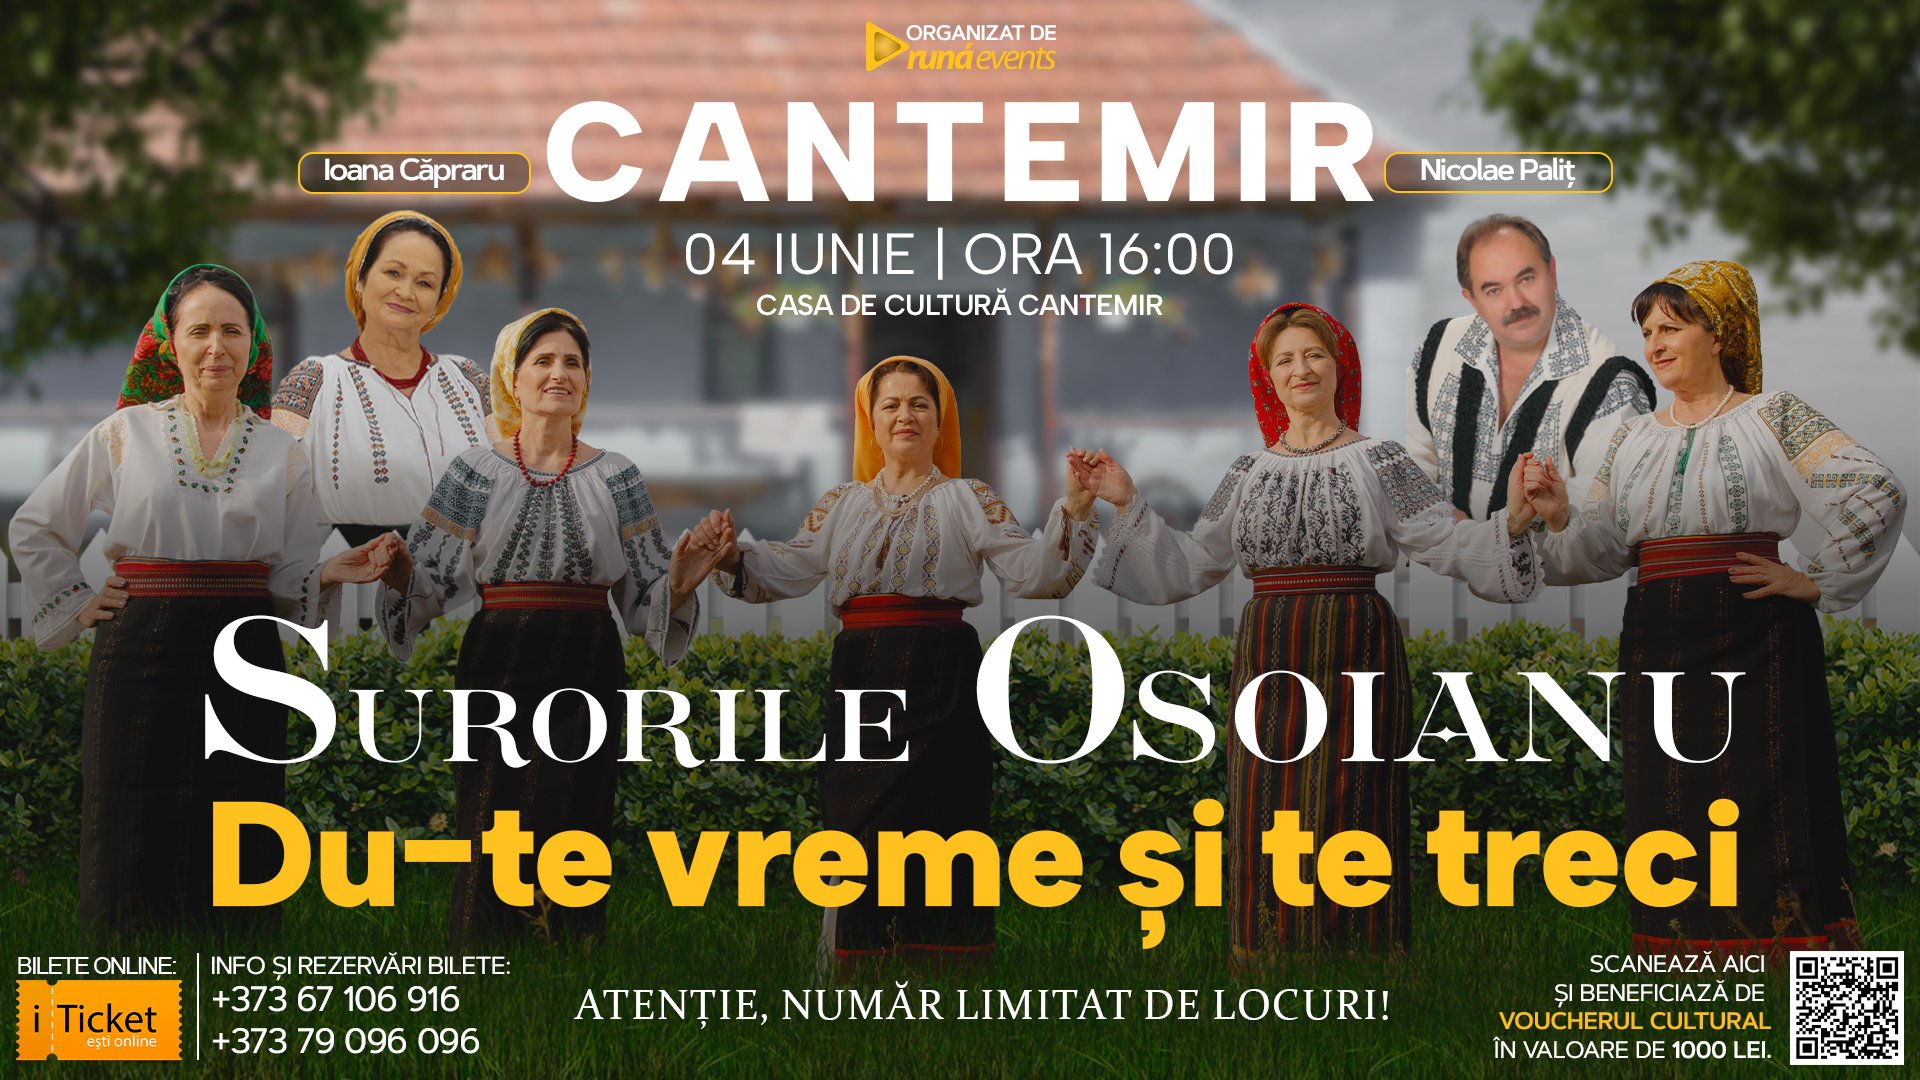 Concert in Cantemir - Surorile Osoianu, Ioana Capraru și Nicolae Palit - “DU-TE VREME ȘI TE TRECI”